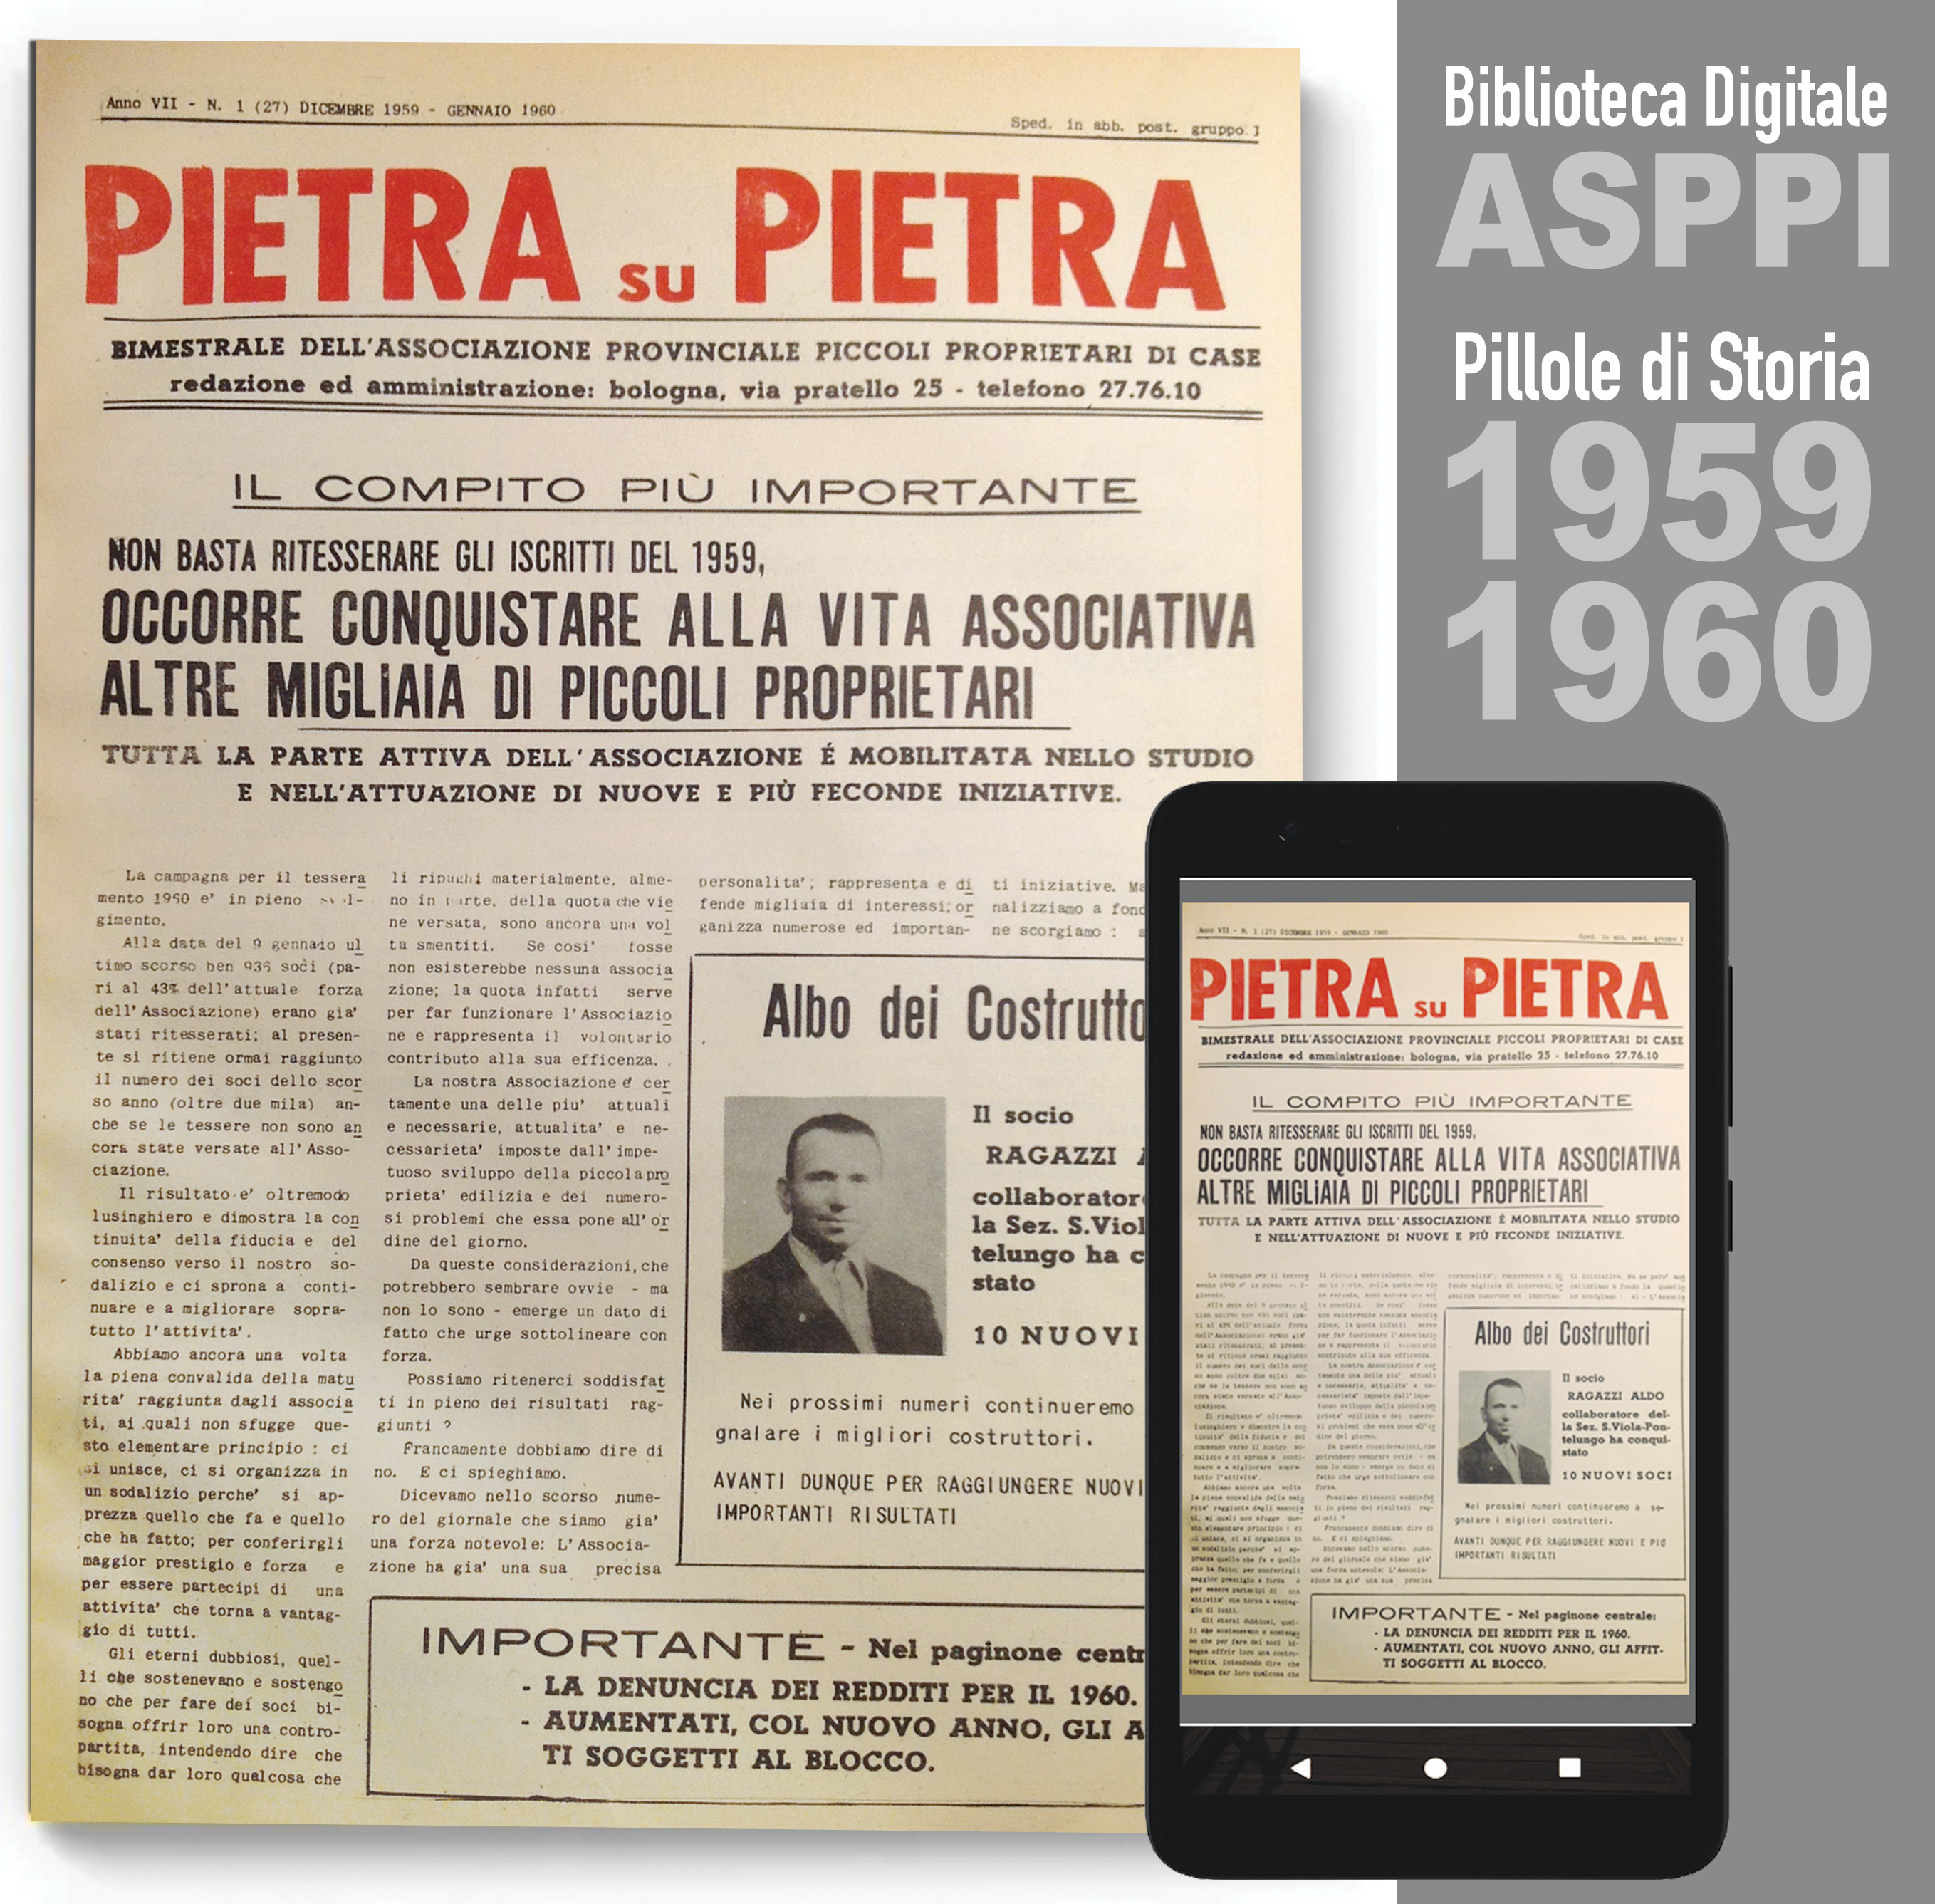 Pillole di Storia ASPPI “1959 – 1960 Pietra su Pietra”